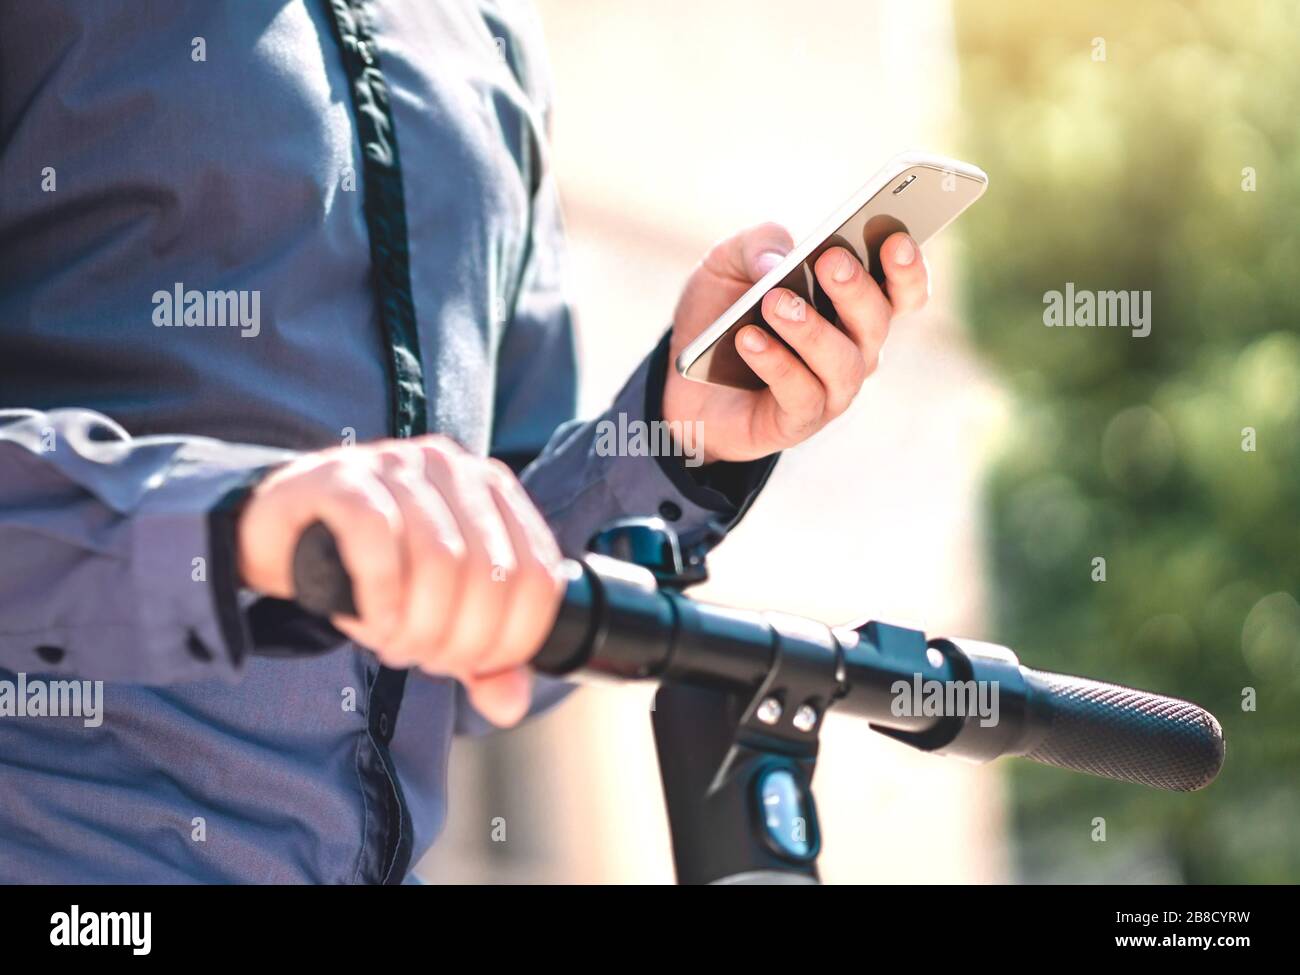 App di noleggio scooter elettrico per telefono. Uomo che utilizza lo smartphone per noleggiare un veicolo e per spostarsi. Applicazione mobile per il trasporto ecologico. Foto Stock